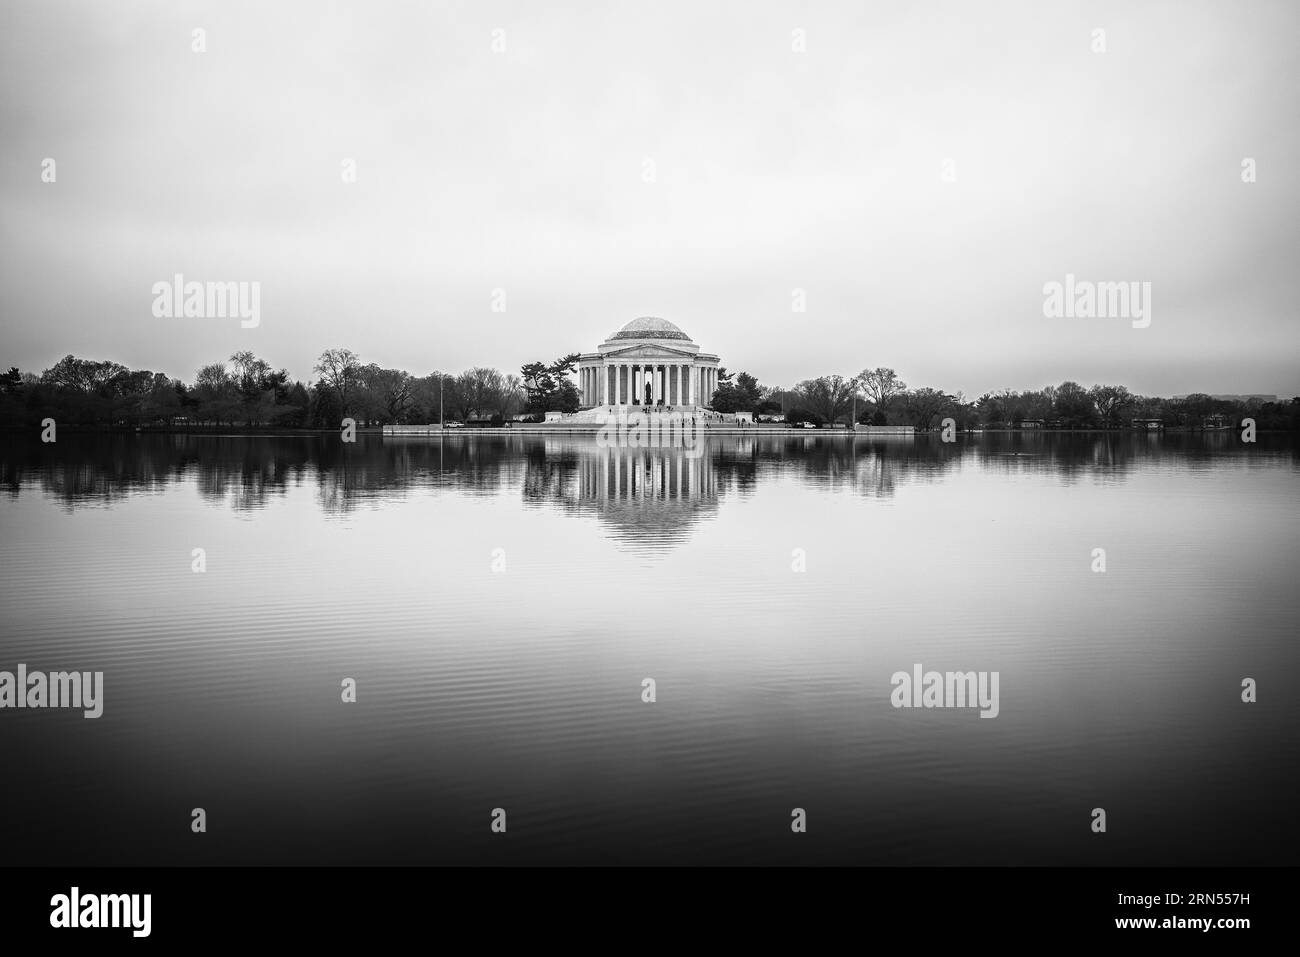 WASHINGTON DC, États-Unis — Une photographie en noir et blanc du Jefferson Memorial. Le Jefferson Memorial est un hommage emblématique au troisième président américain, Thomas Jefferson. Surplombant le Tidal Basin, ce monument néoclassique témoigne de la contribution de Jefferson aux principes fondateurs de la nation. Banque D'Images